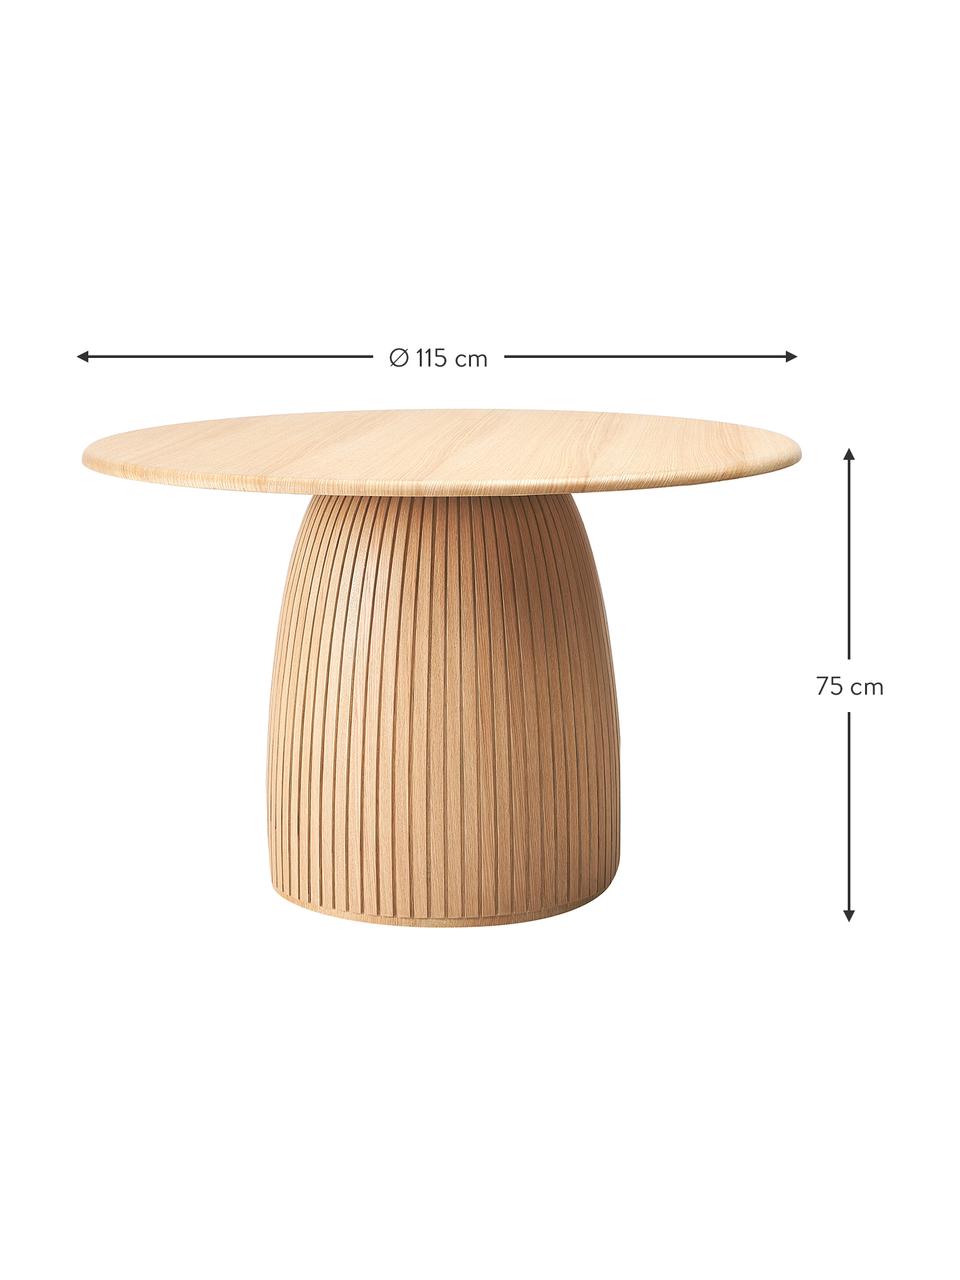 Kulatý jídelní stůl s drážkovanou strukturou z dubového dřeva Nelly, různé velikosti, Dubová dýha, s MDF deska (dřevovláknitá deska střední hustoty), certifikace FSC, Dubové dřevo, Ø 115 cm, V 75 cm